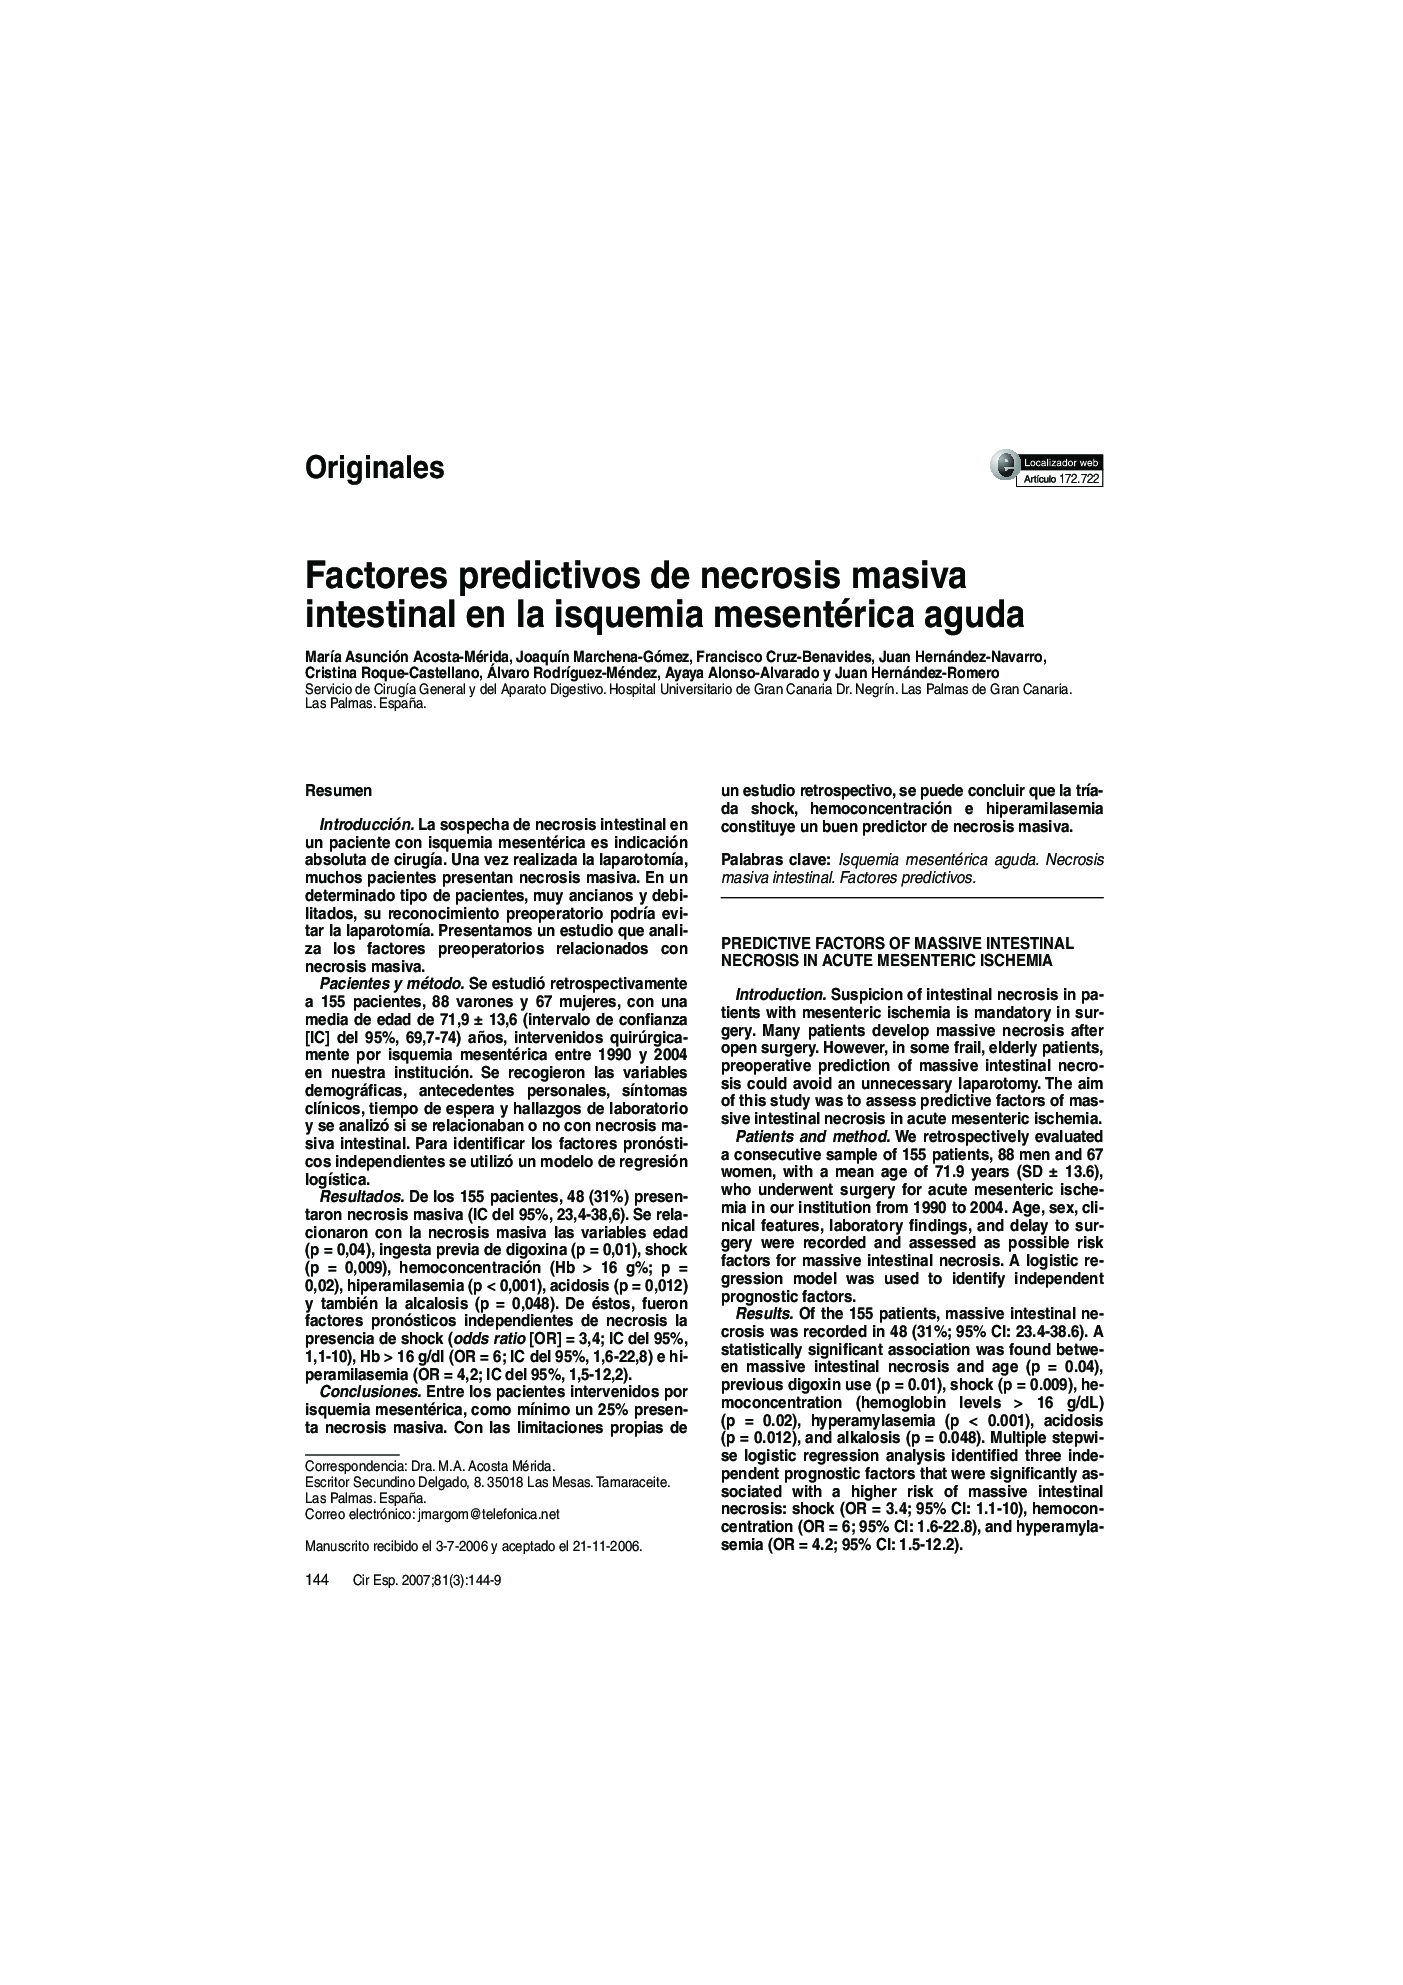 Factores predictivos de necrosis masiva intestinal en la isquemia mesentérica aguda